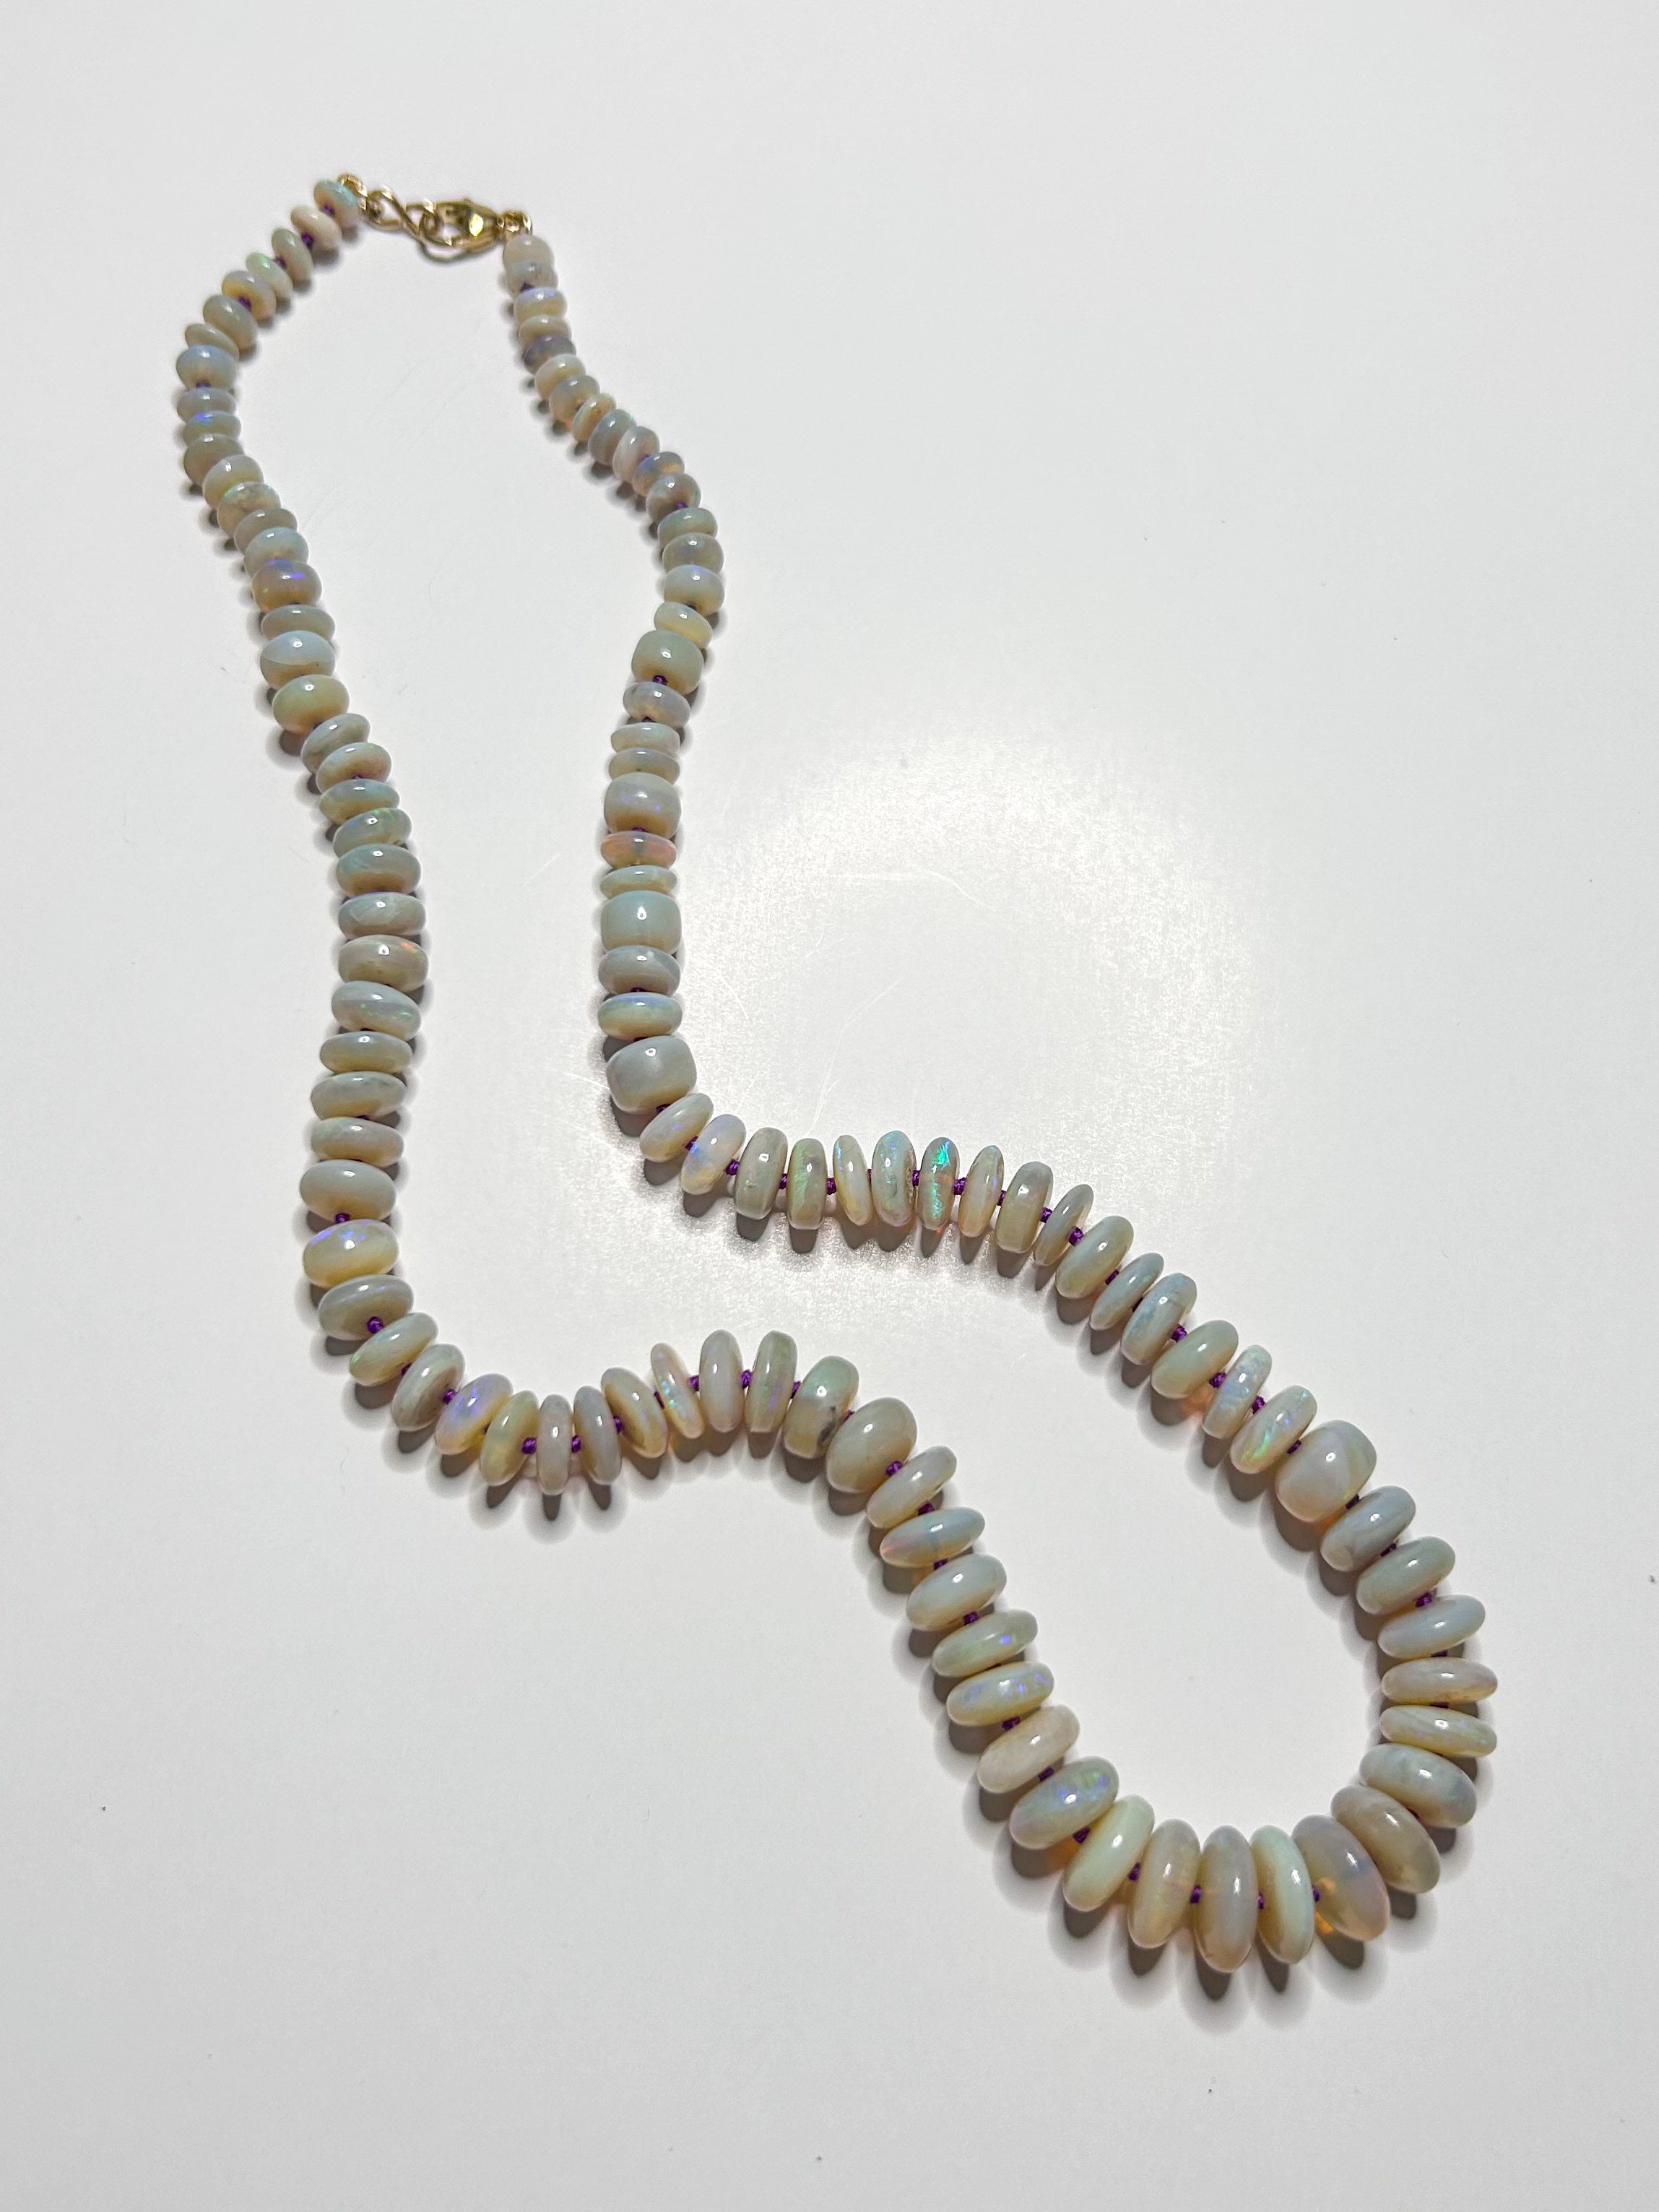 Amazon.com: Australia Fire Opal Jewelry- Genuine Australian Triplets Opal  Necklace Pendant in Sterling Silver Women's Jewelry : Clothing, Shoes &  Jewelry